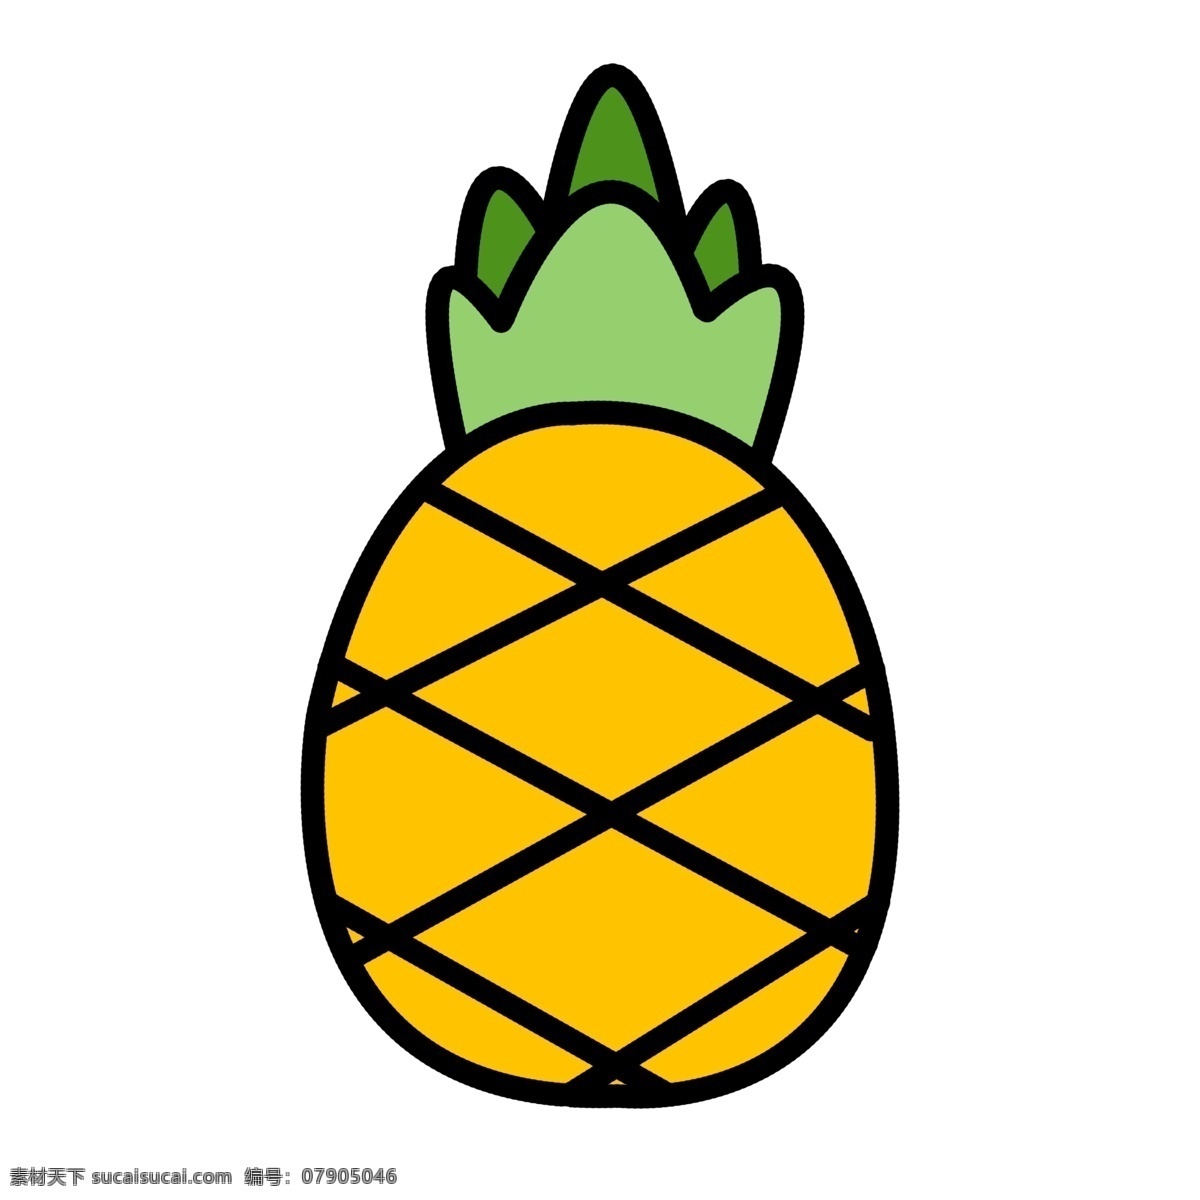 水果 元素 图标 菠萝 ppt图标 简约风格 水果图标 海报图标 菠萝水果 免 扣 图案